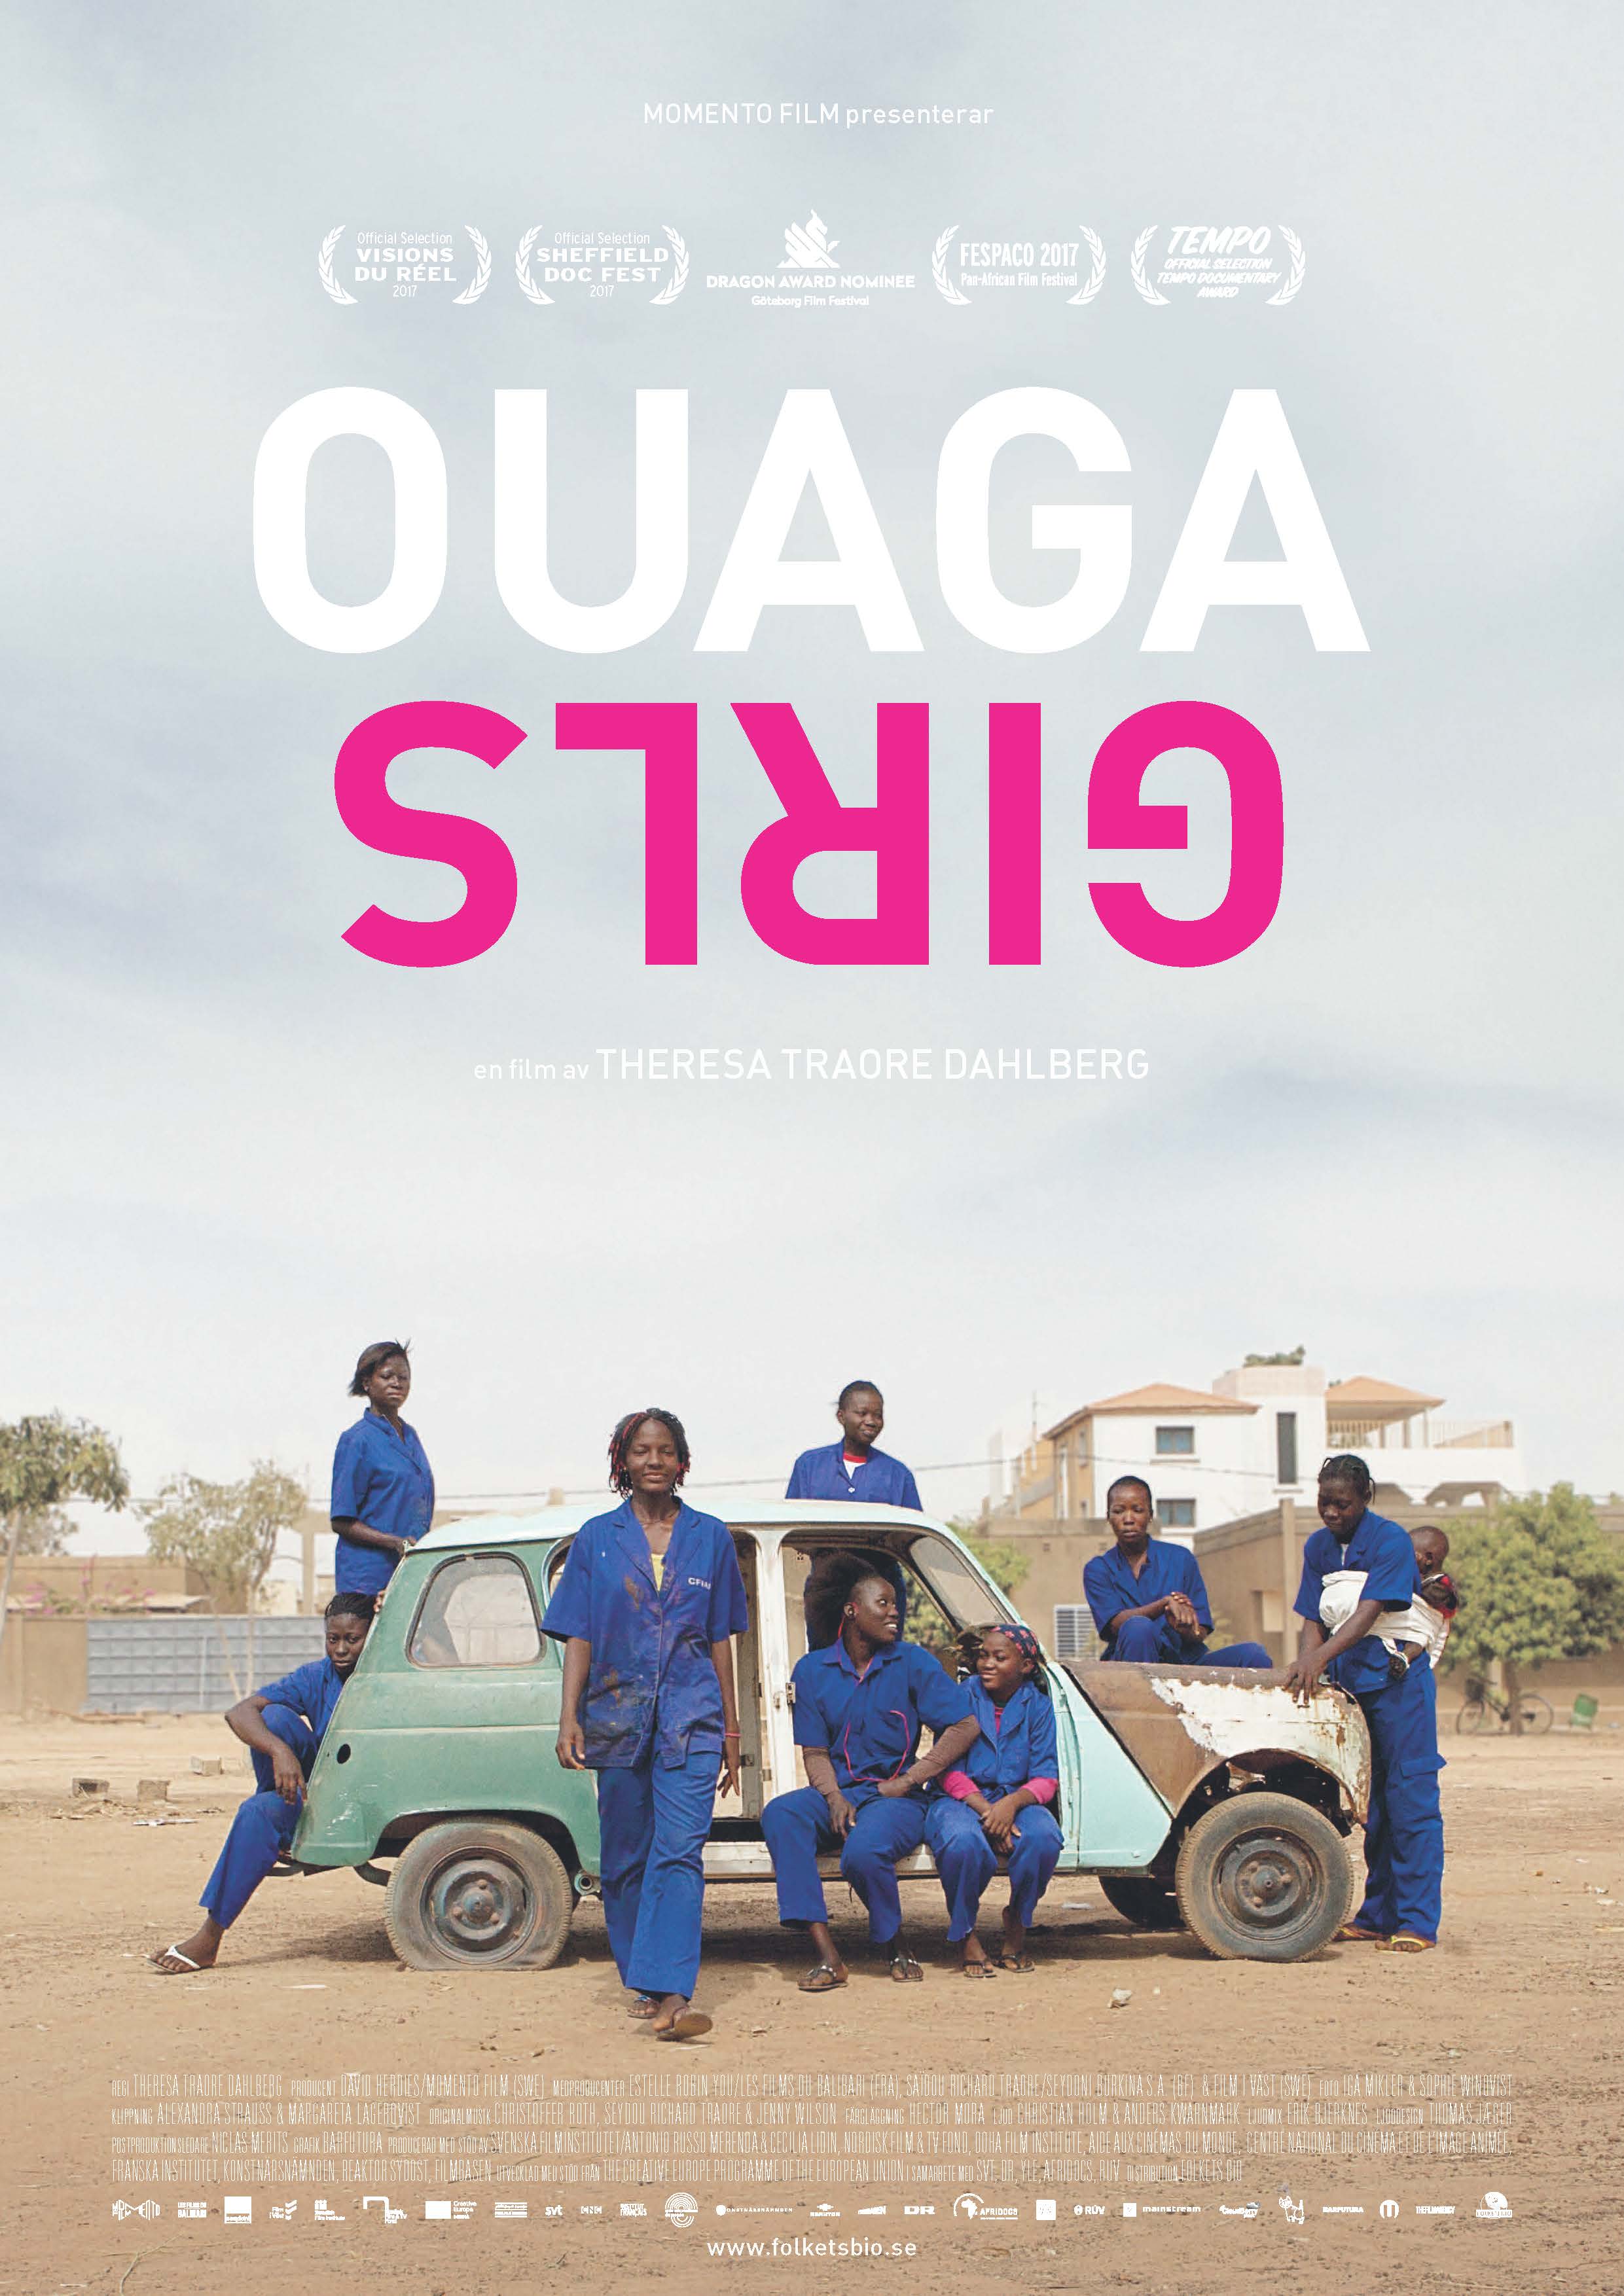 Ouaga girls